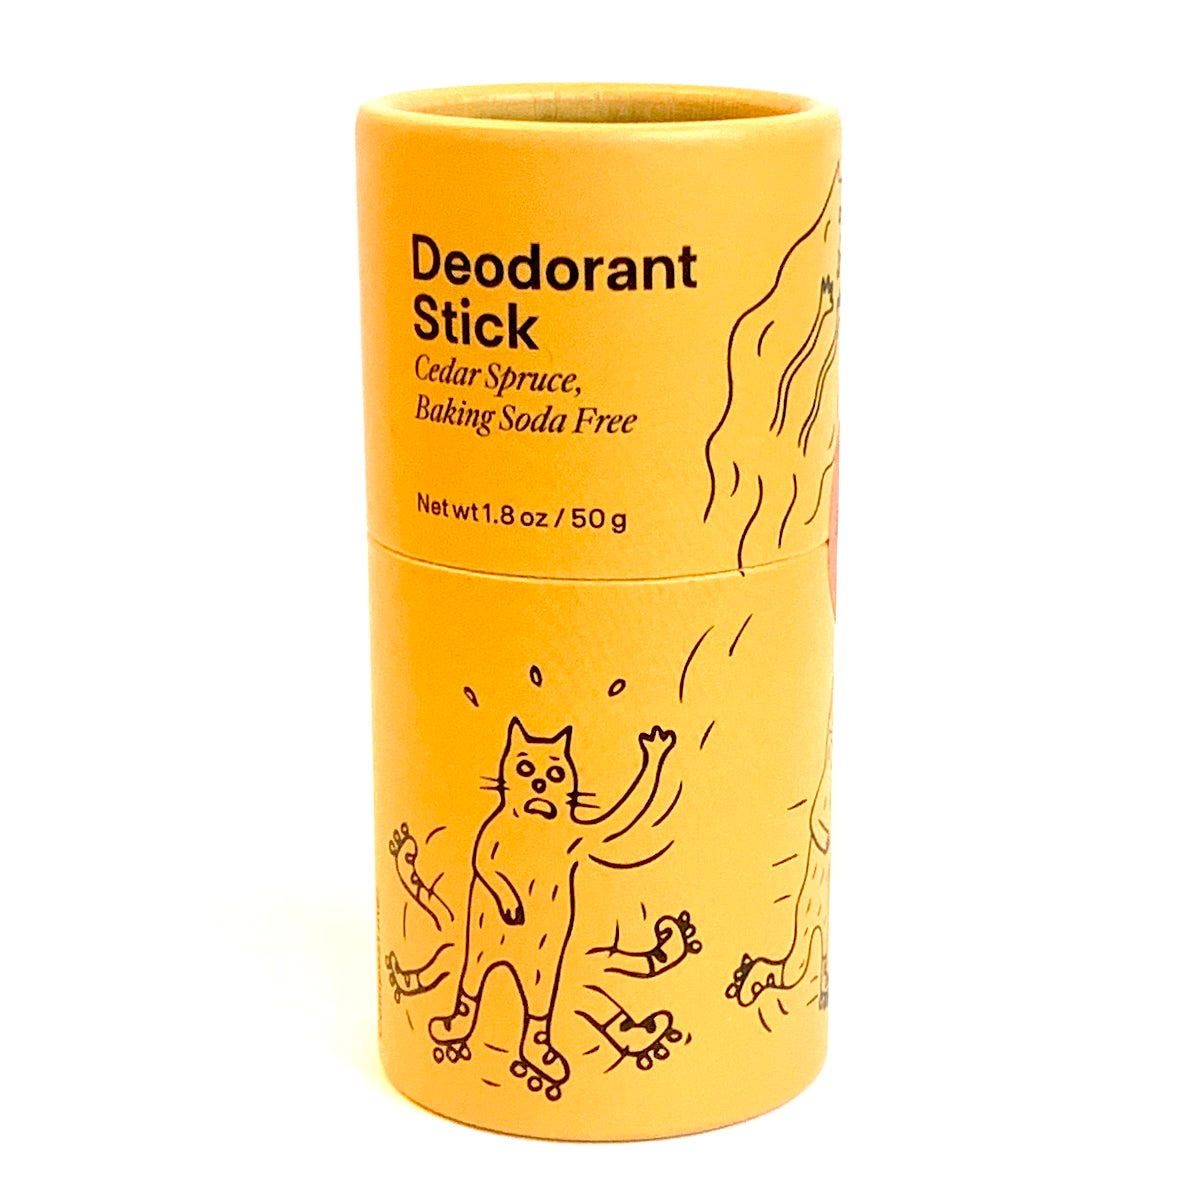 Compostable Deodorant Stick - Cedar Spruce